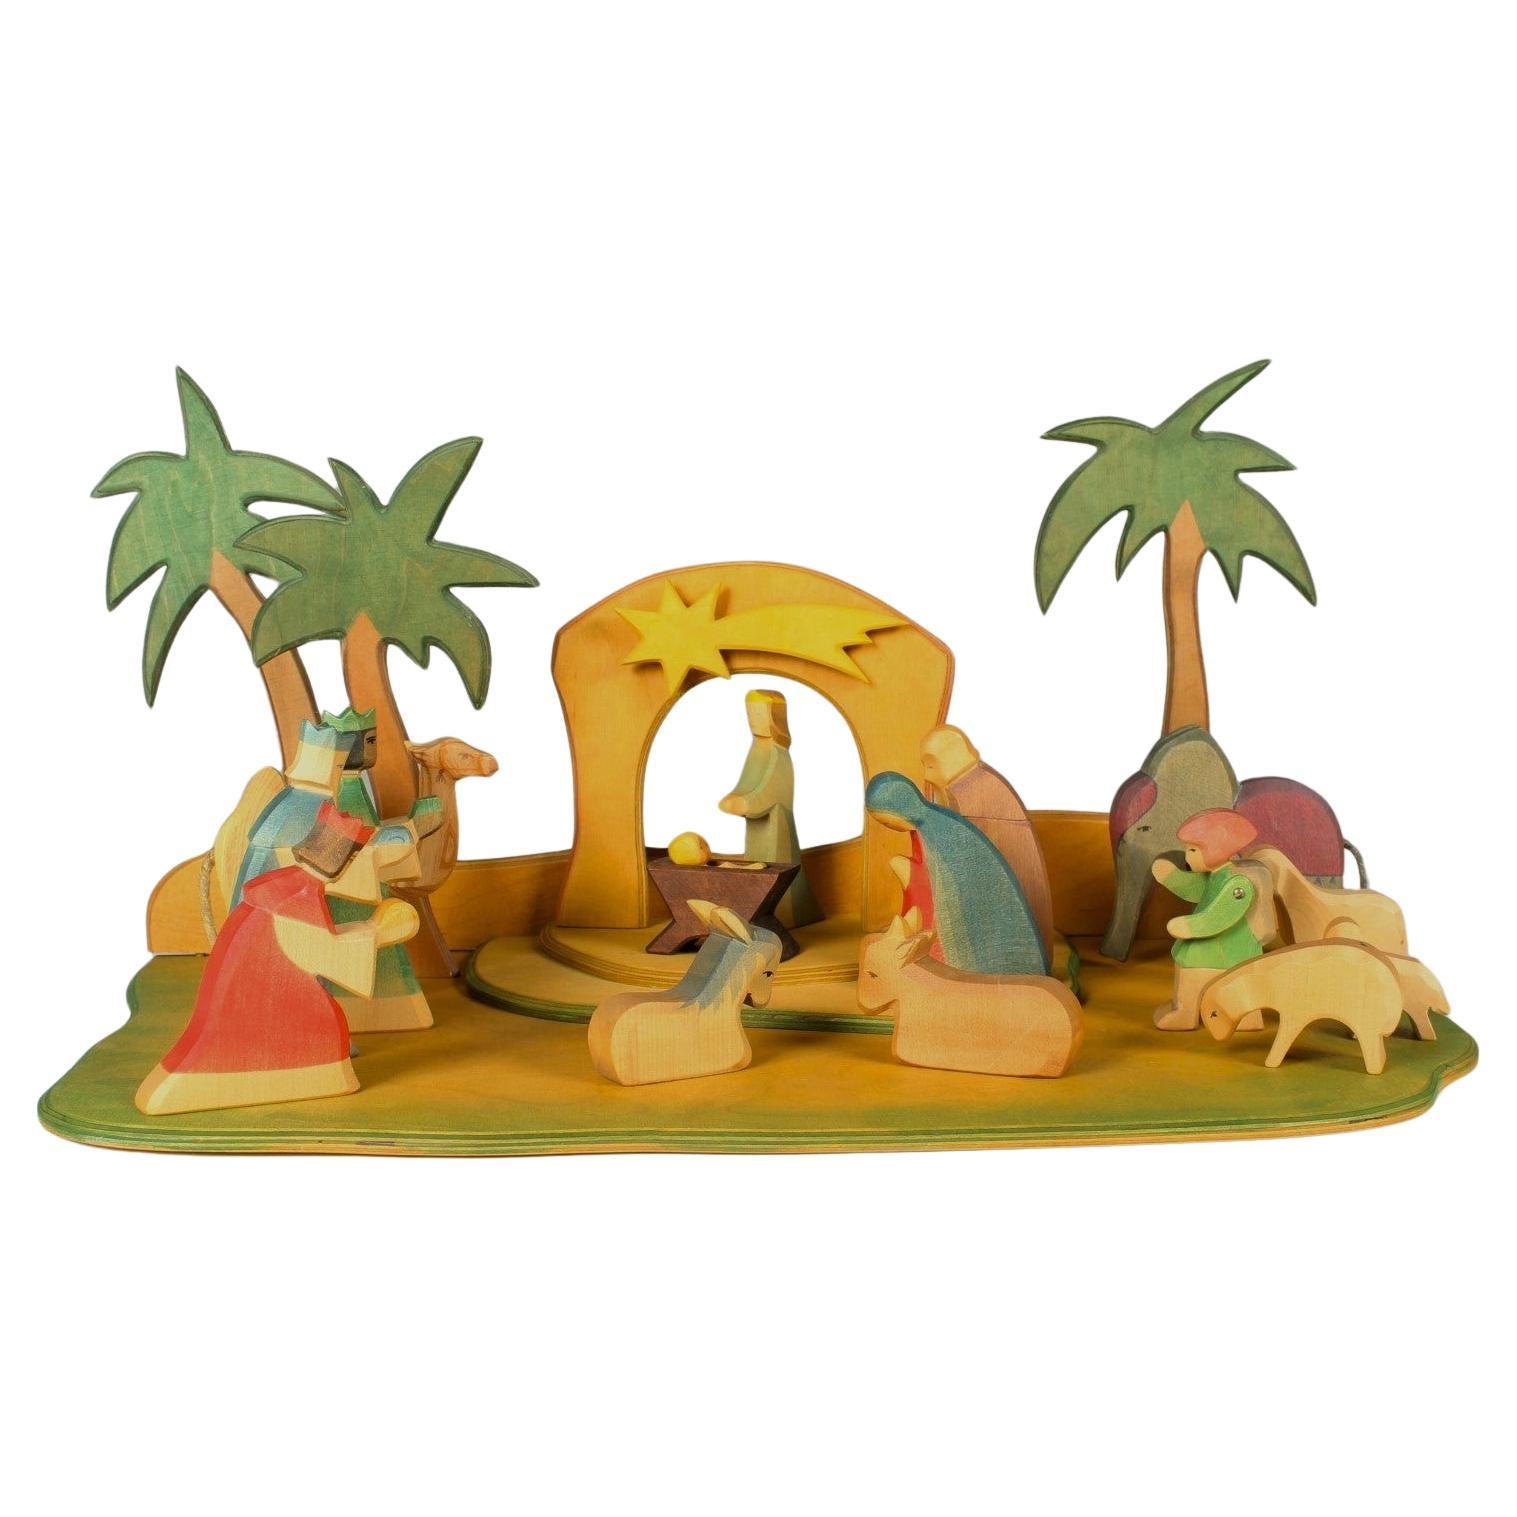 Großes 16-teiliges Nativity-Set von Ostheimer, handgeschnitzt, zertifiziert, Weihnachtsring im Angebot